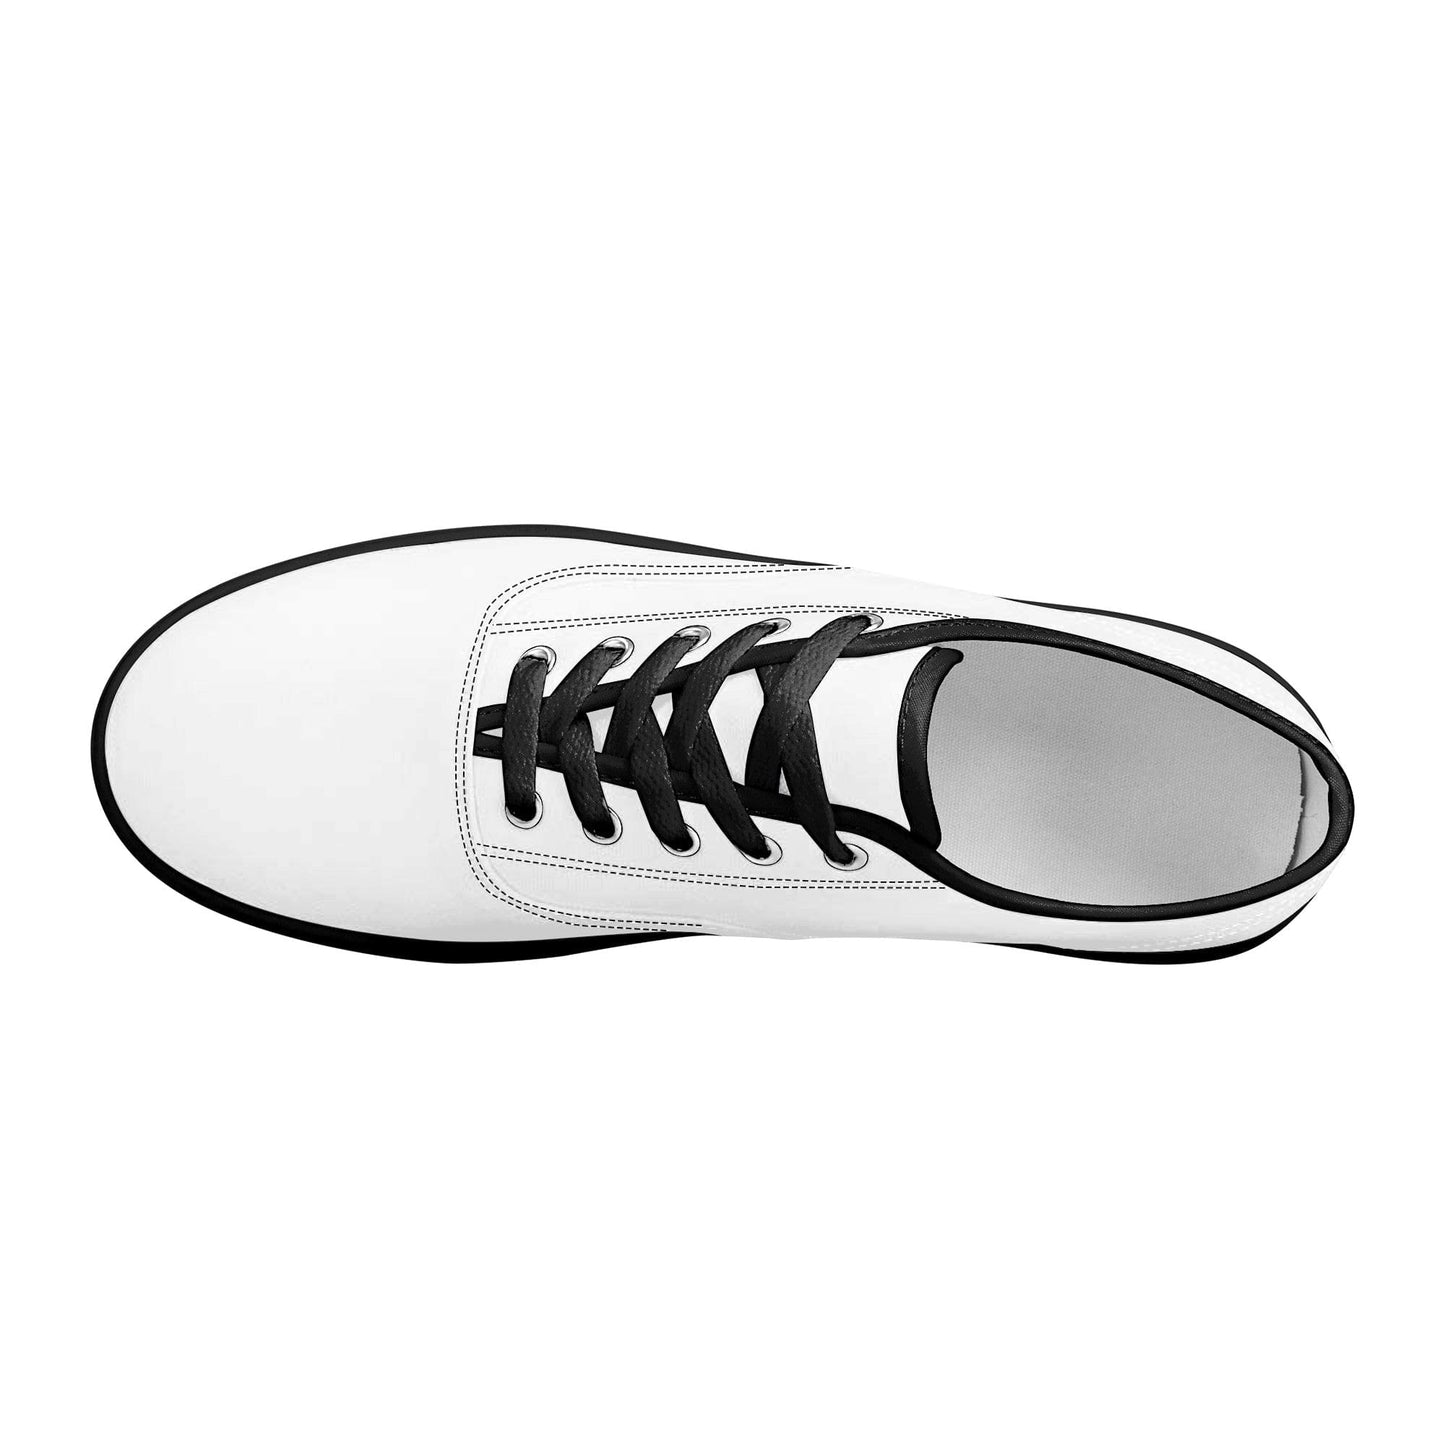 Custom Skate Shoes Canvas- Black D3S Colloid Colors 